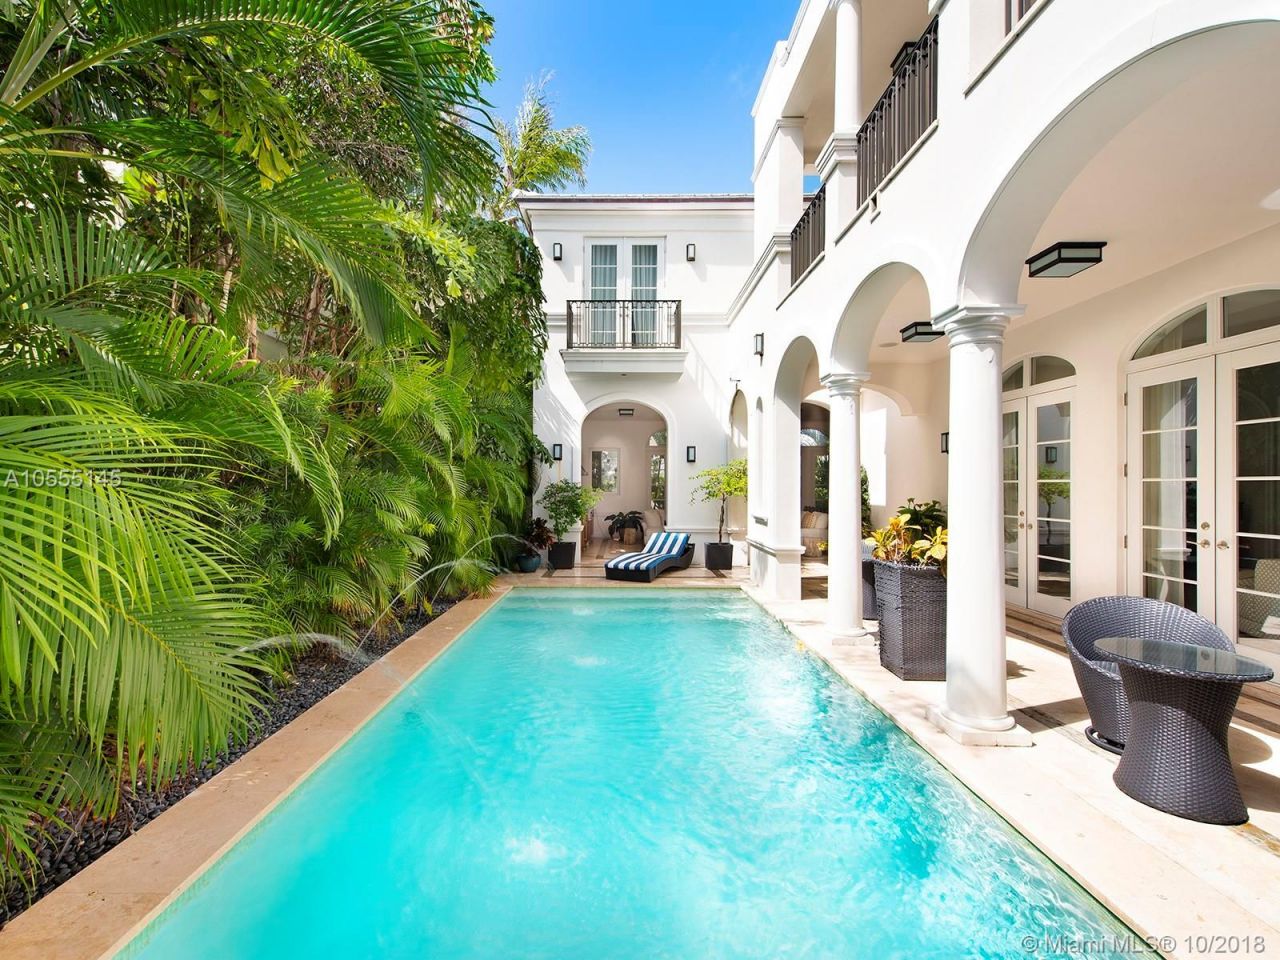 Villa in Miami, USA, 330 m2 - Foto 1